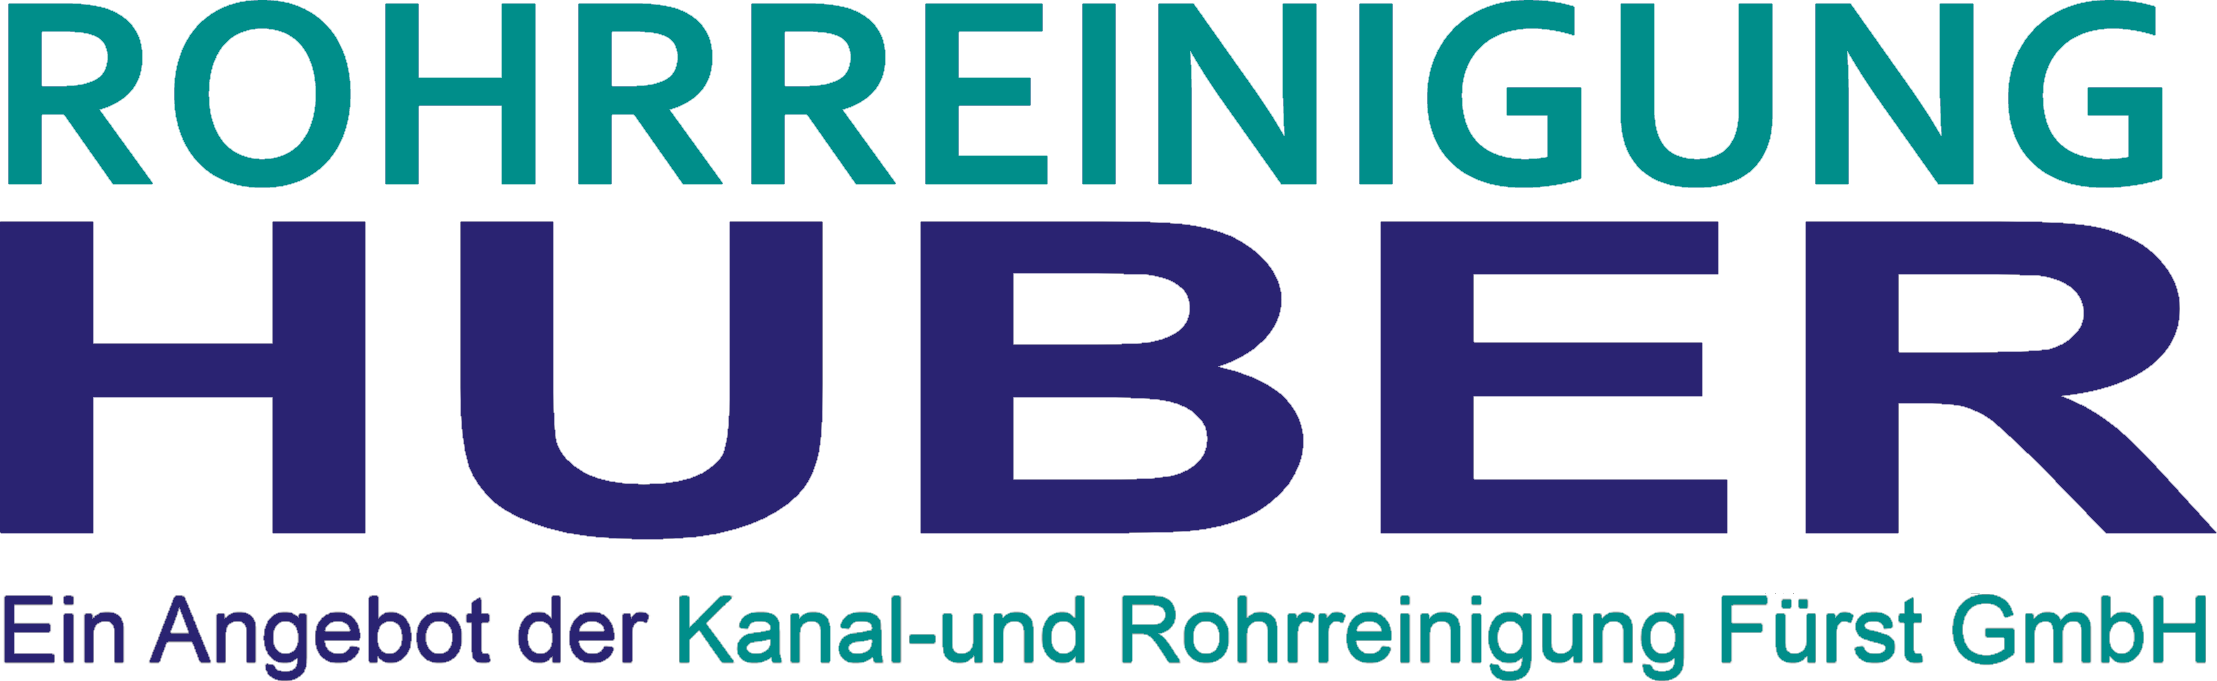 Rohrreinigung Huber - Rohrreinigung für Odenbach